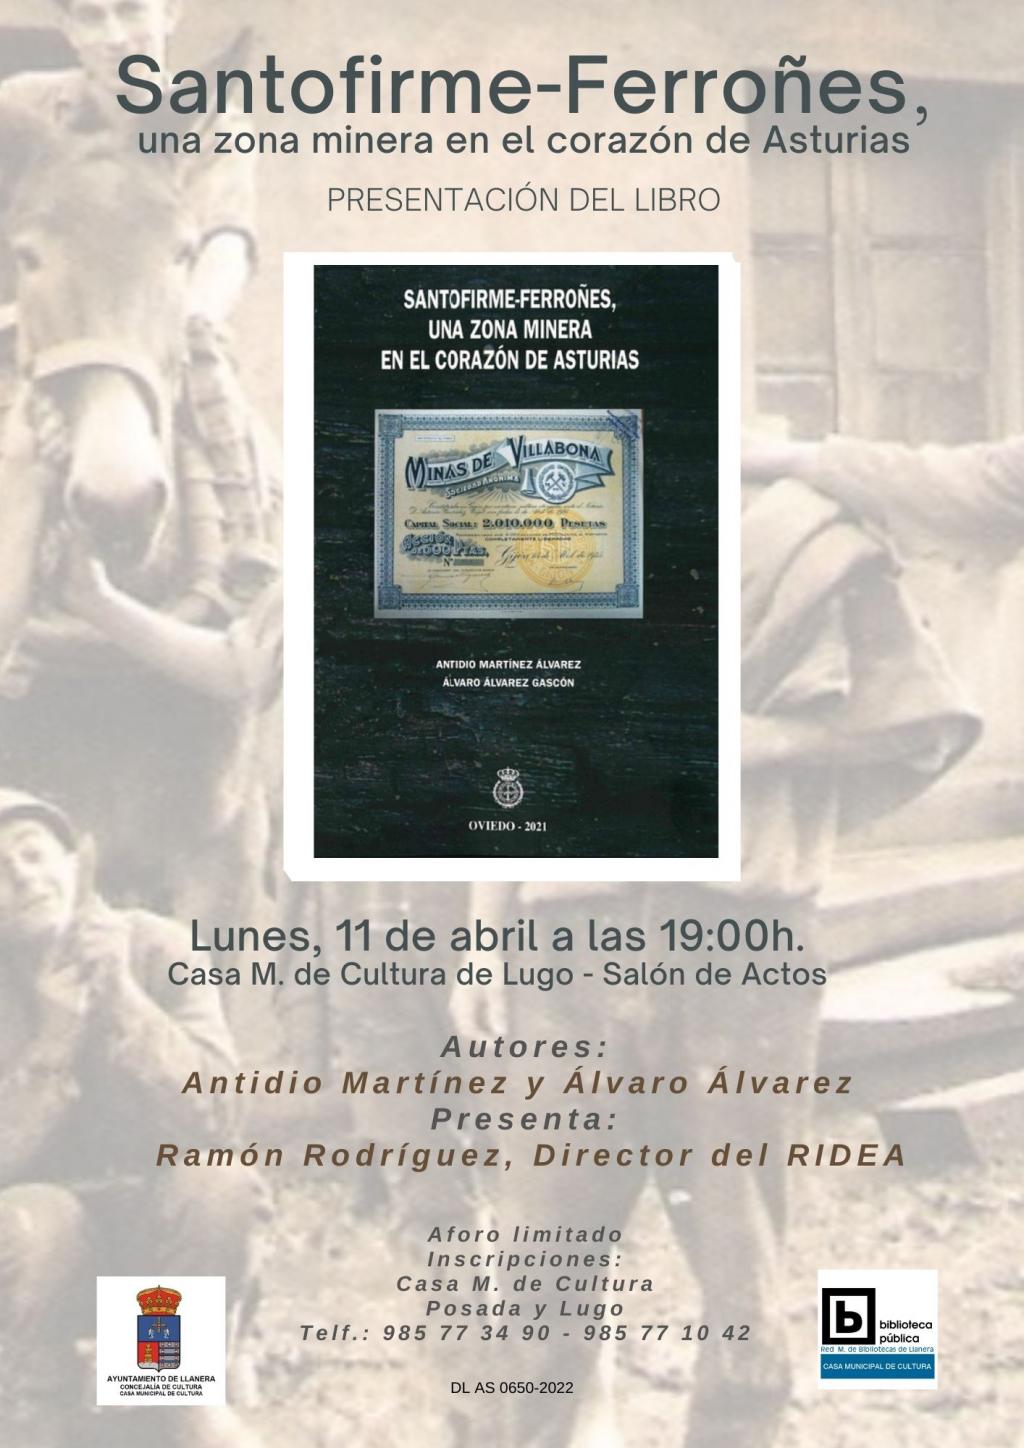 El Tapin - El libro "Santofirme-Ferroñes, una zona minera en el corazón de Asturias" se presentará el 11 de abril en la Casa de Cultura de Lugo